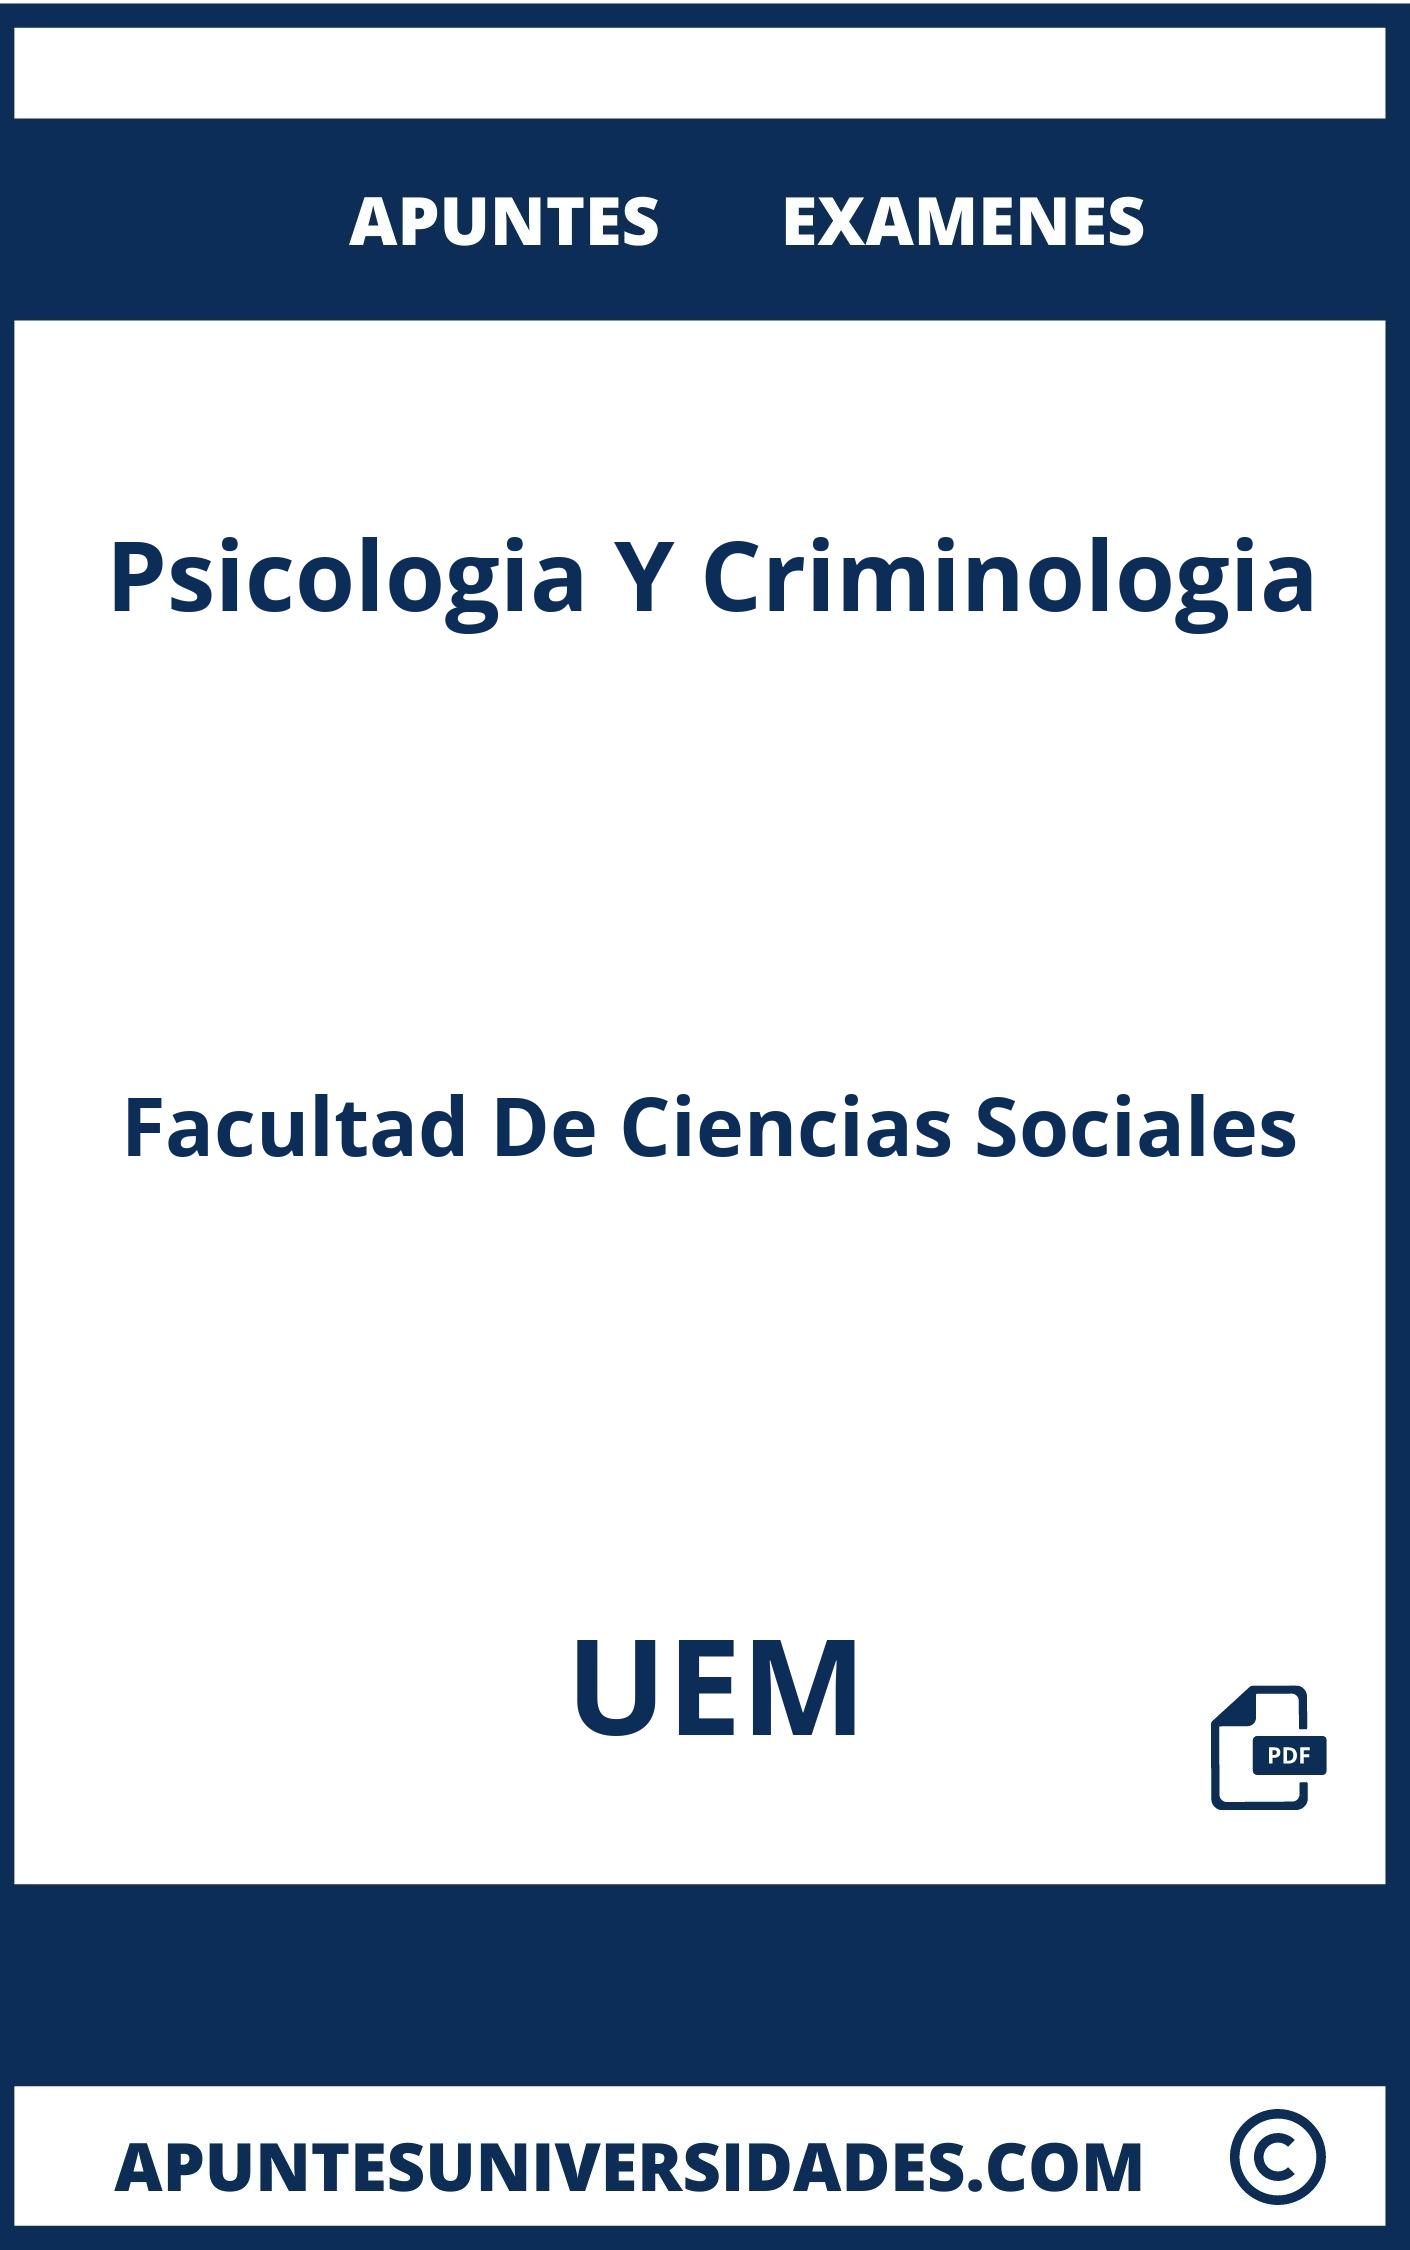 Psicologia Y Criminologia UEM Examenes Apuntes